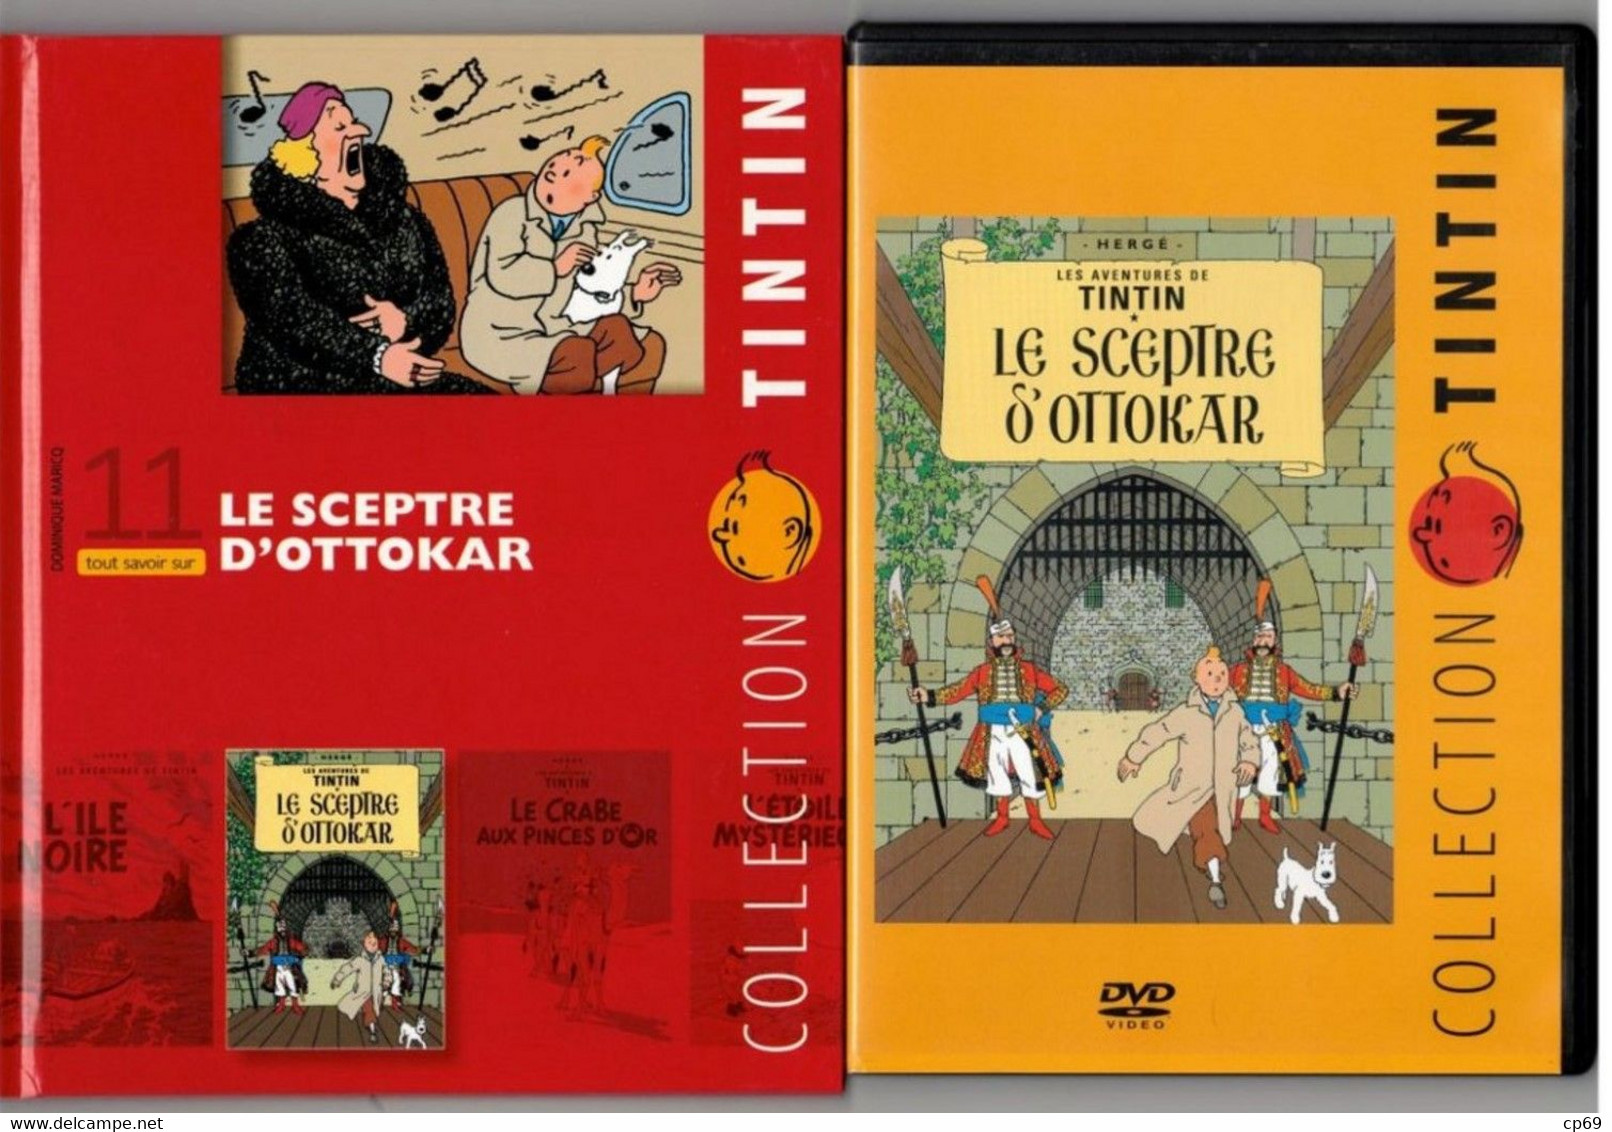 Tintin Hergé / Moulinsart 2010 Milou Chien Dog Cane Le Sceptre D'Ottokar N°11 DVD + Livret Explicatif En B.Etat - Dessin Animé